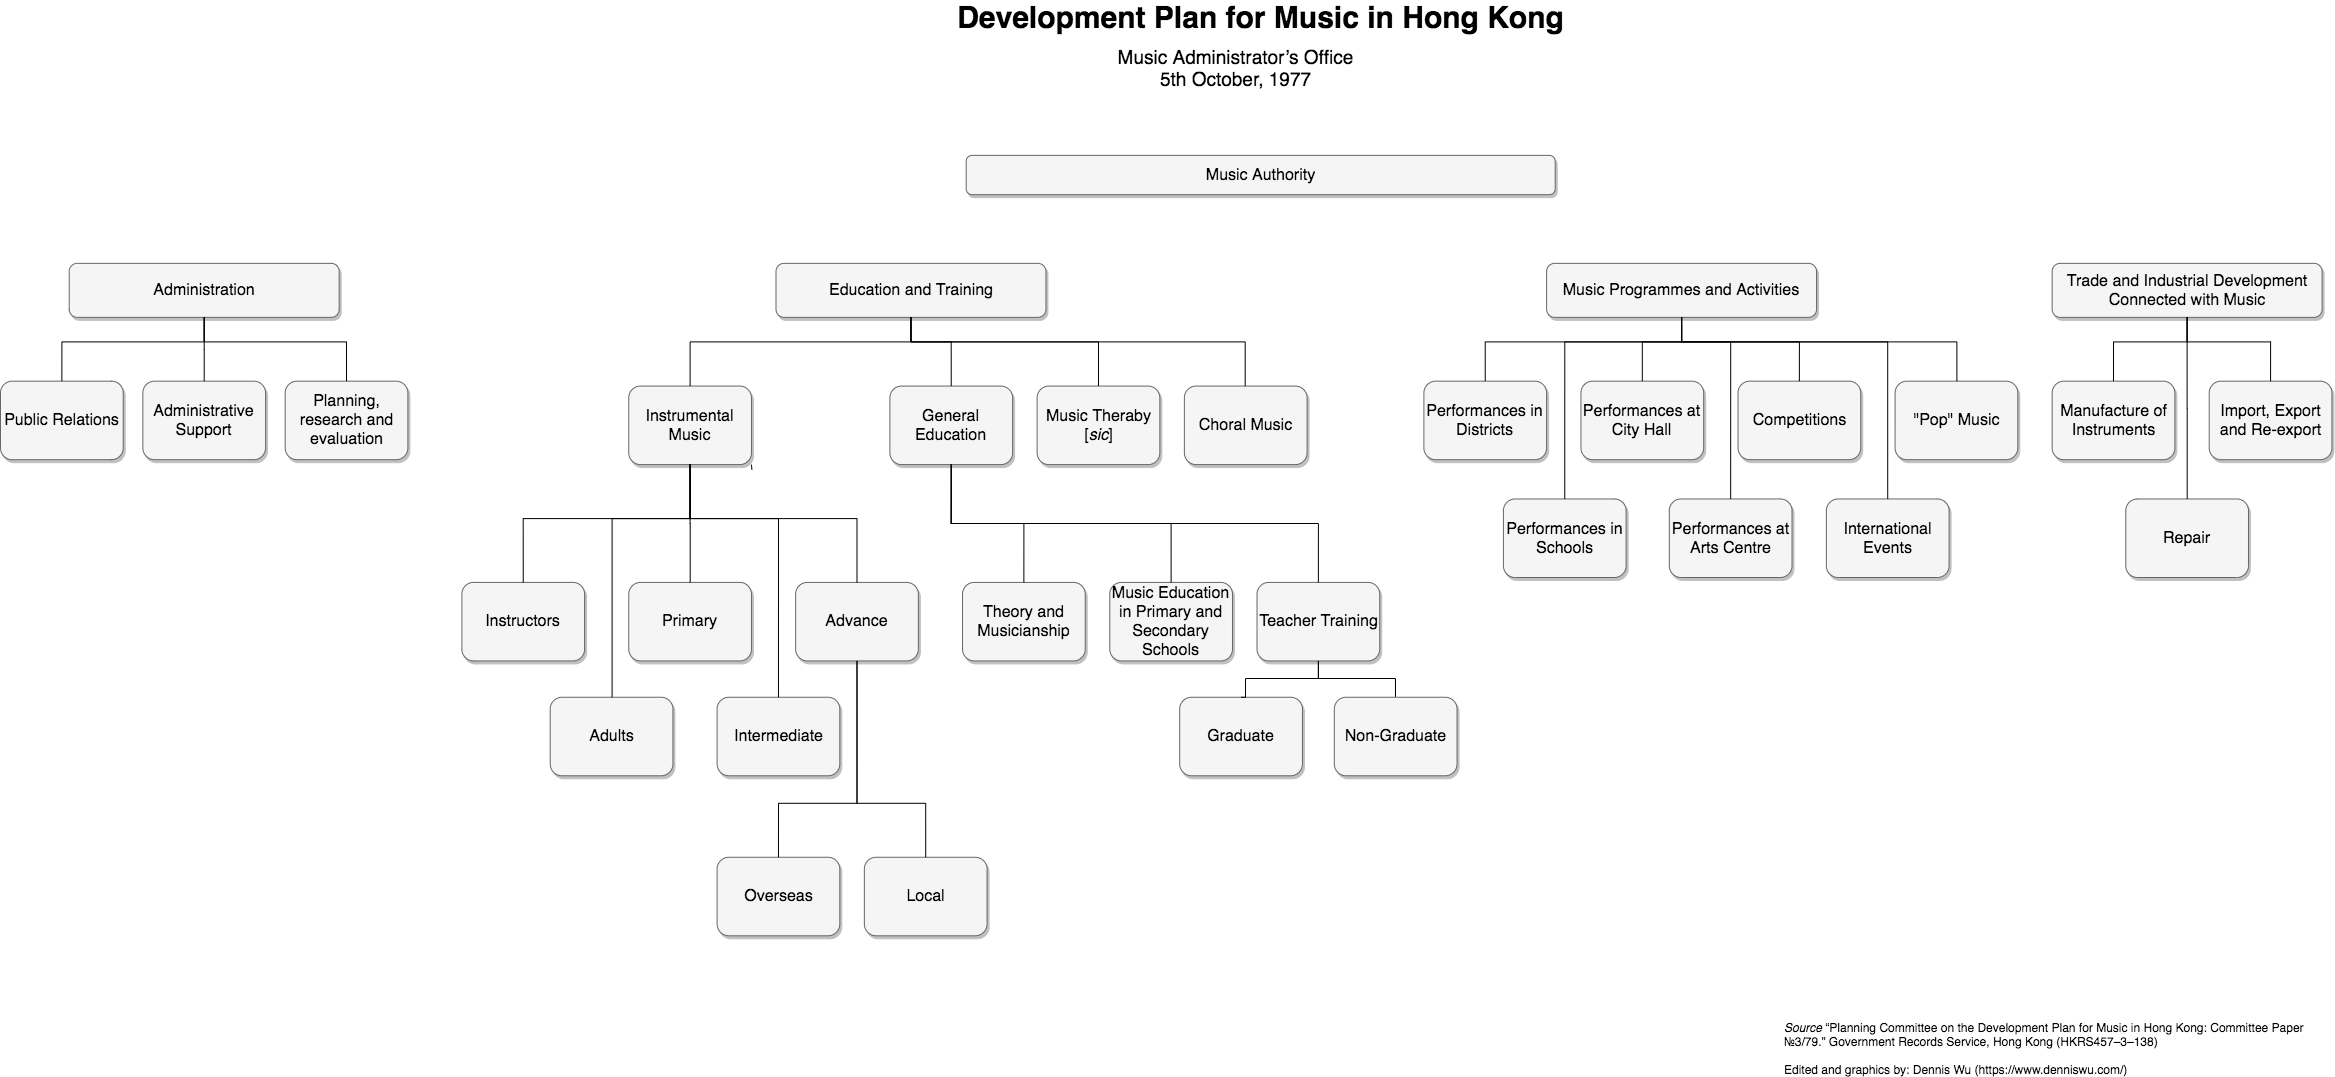 1978 年《香港音樂發展計劃綱要》的圖表